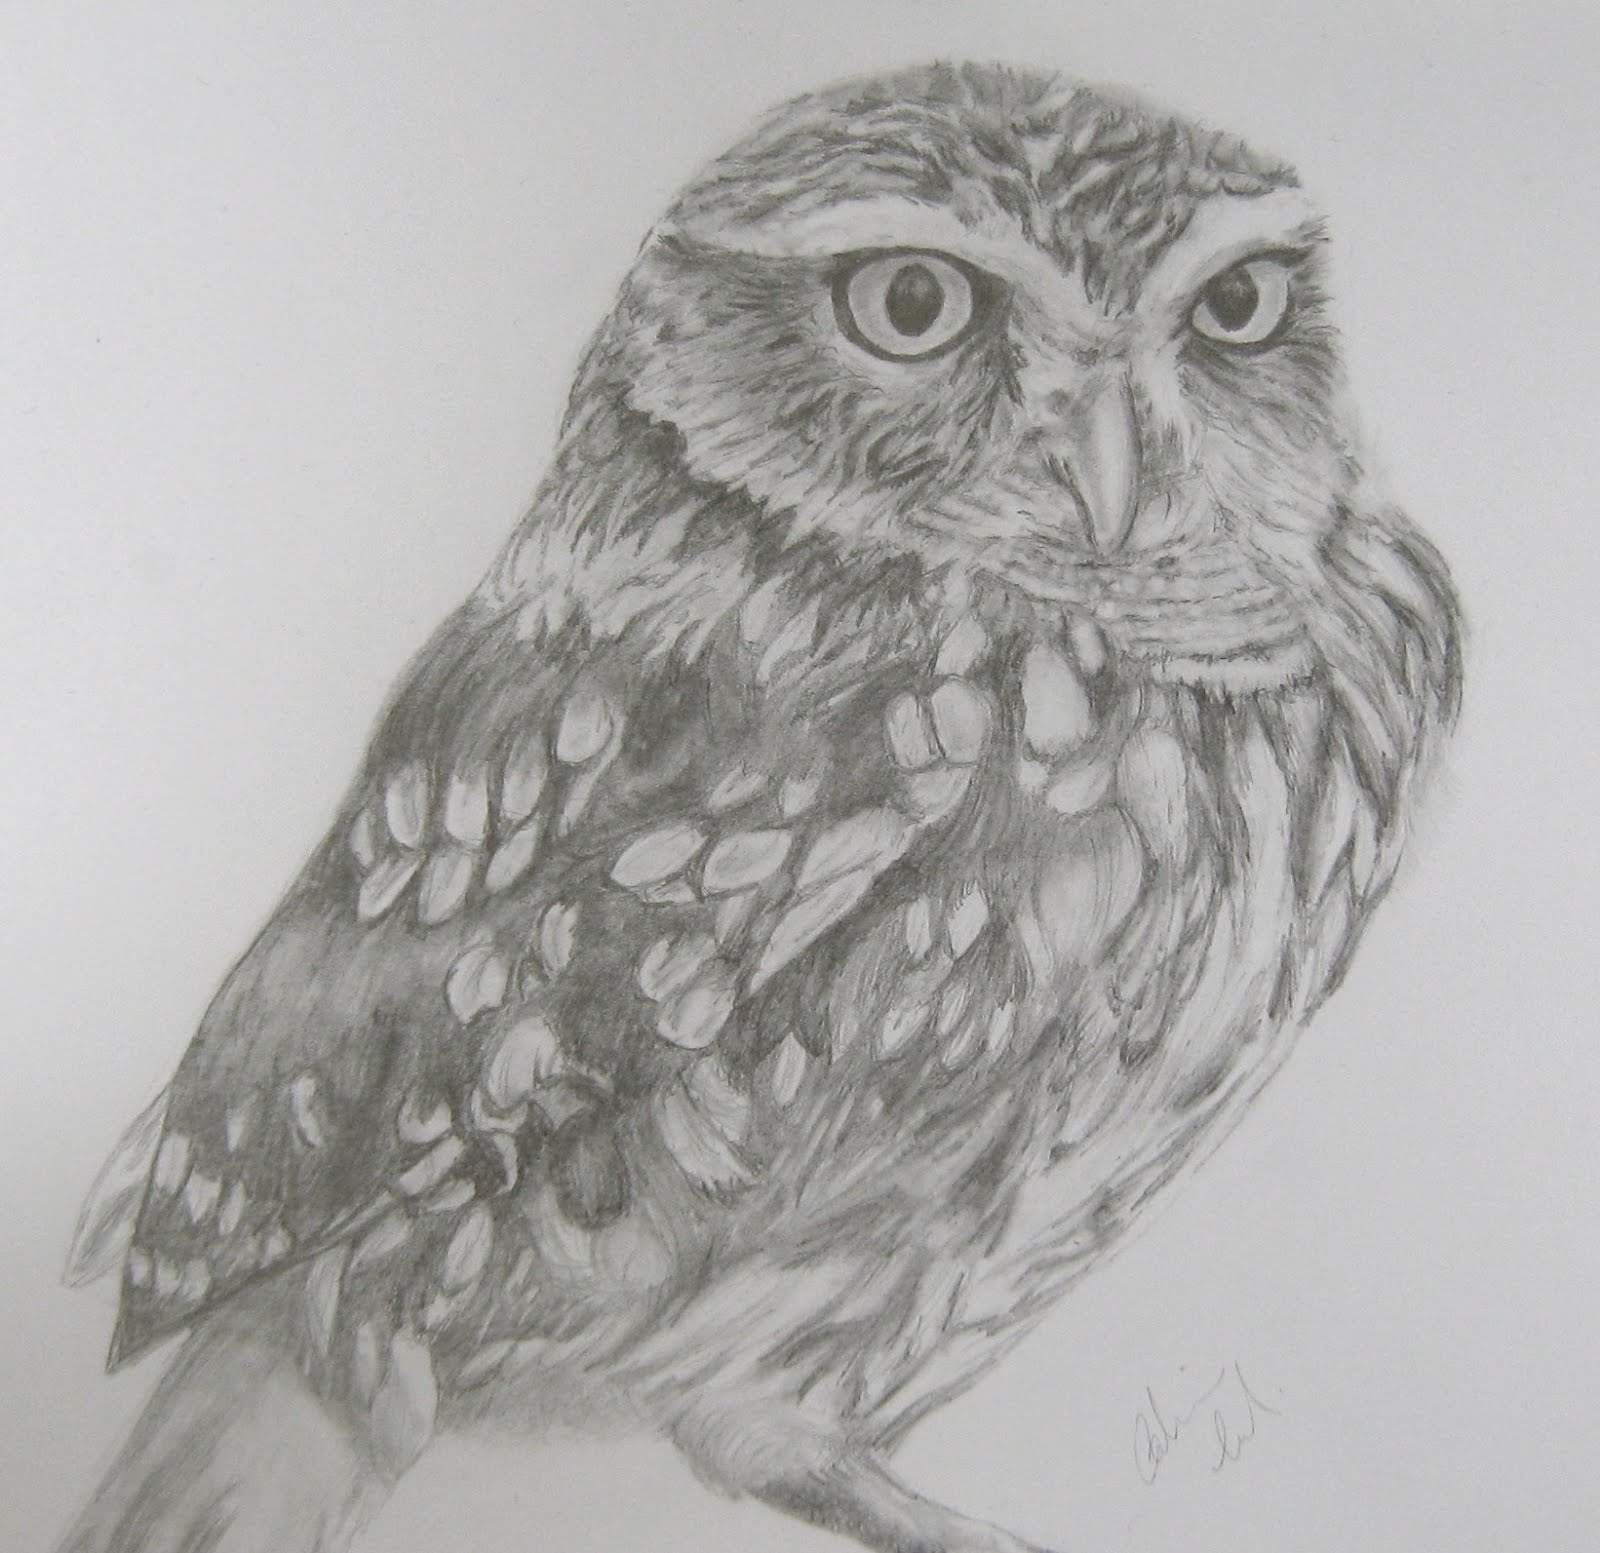  Owl  Drawings  In Pencil